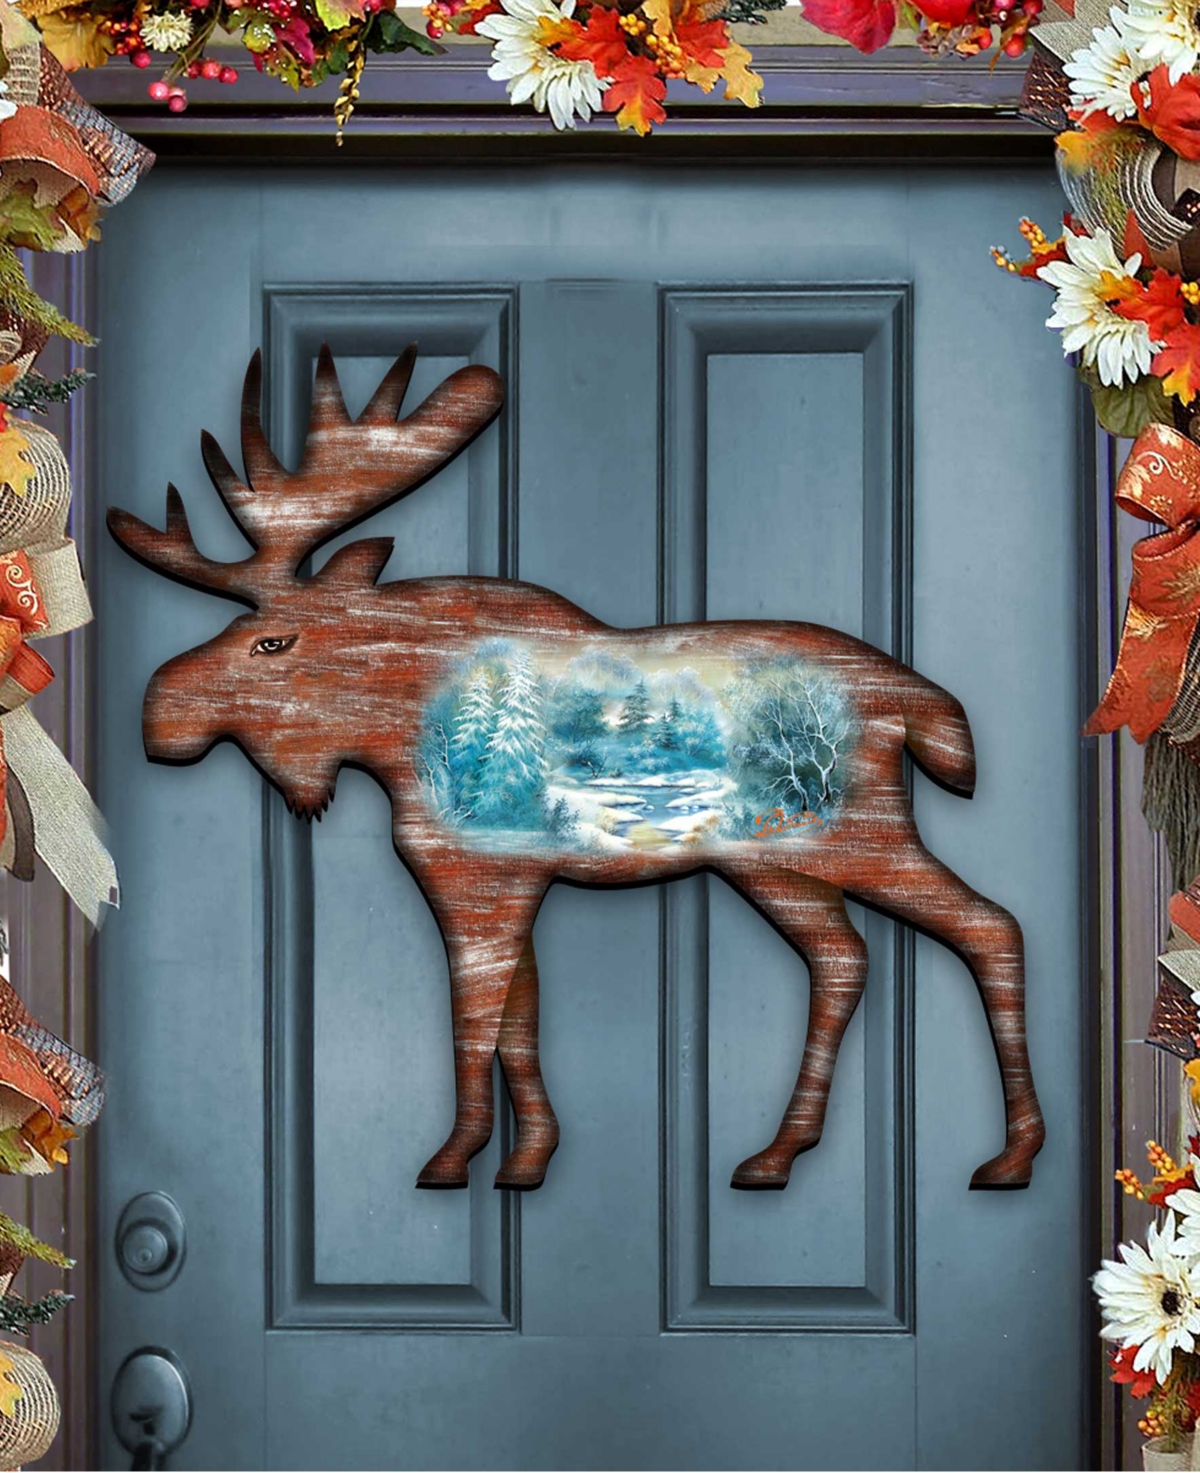 Moose Vintage-Like Wildlife Holiday Door Decor - Multi Color